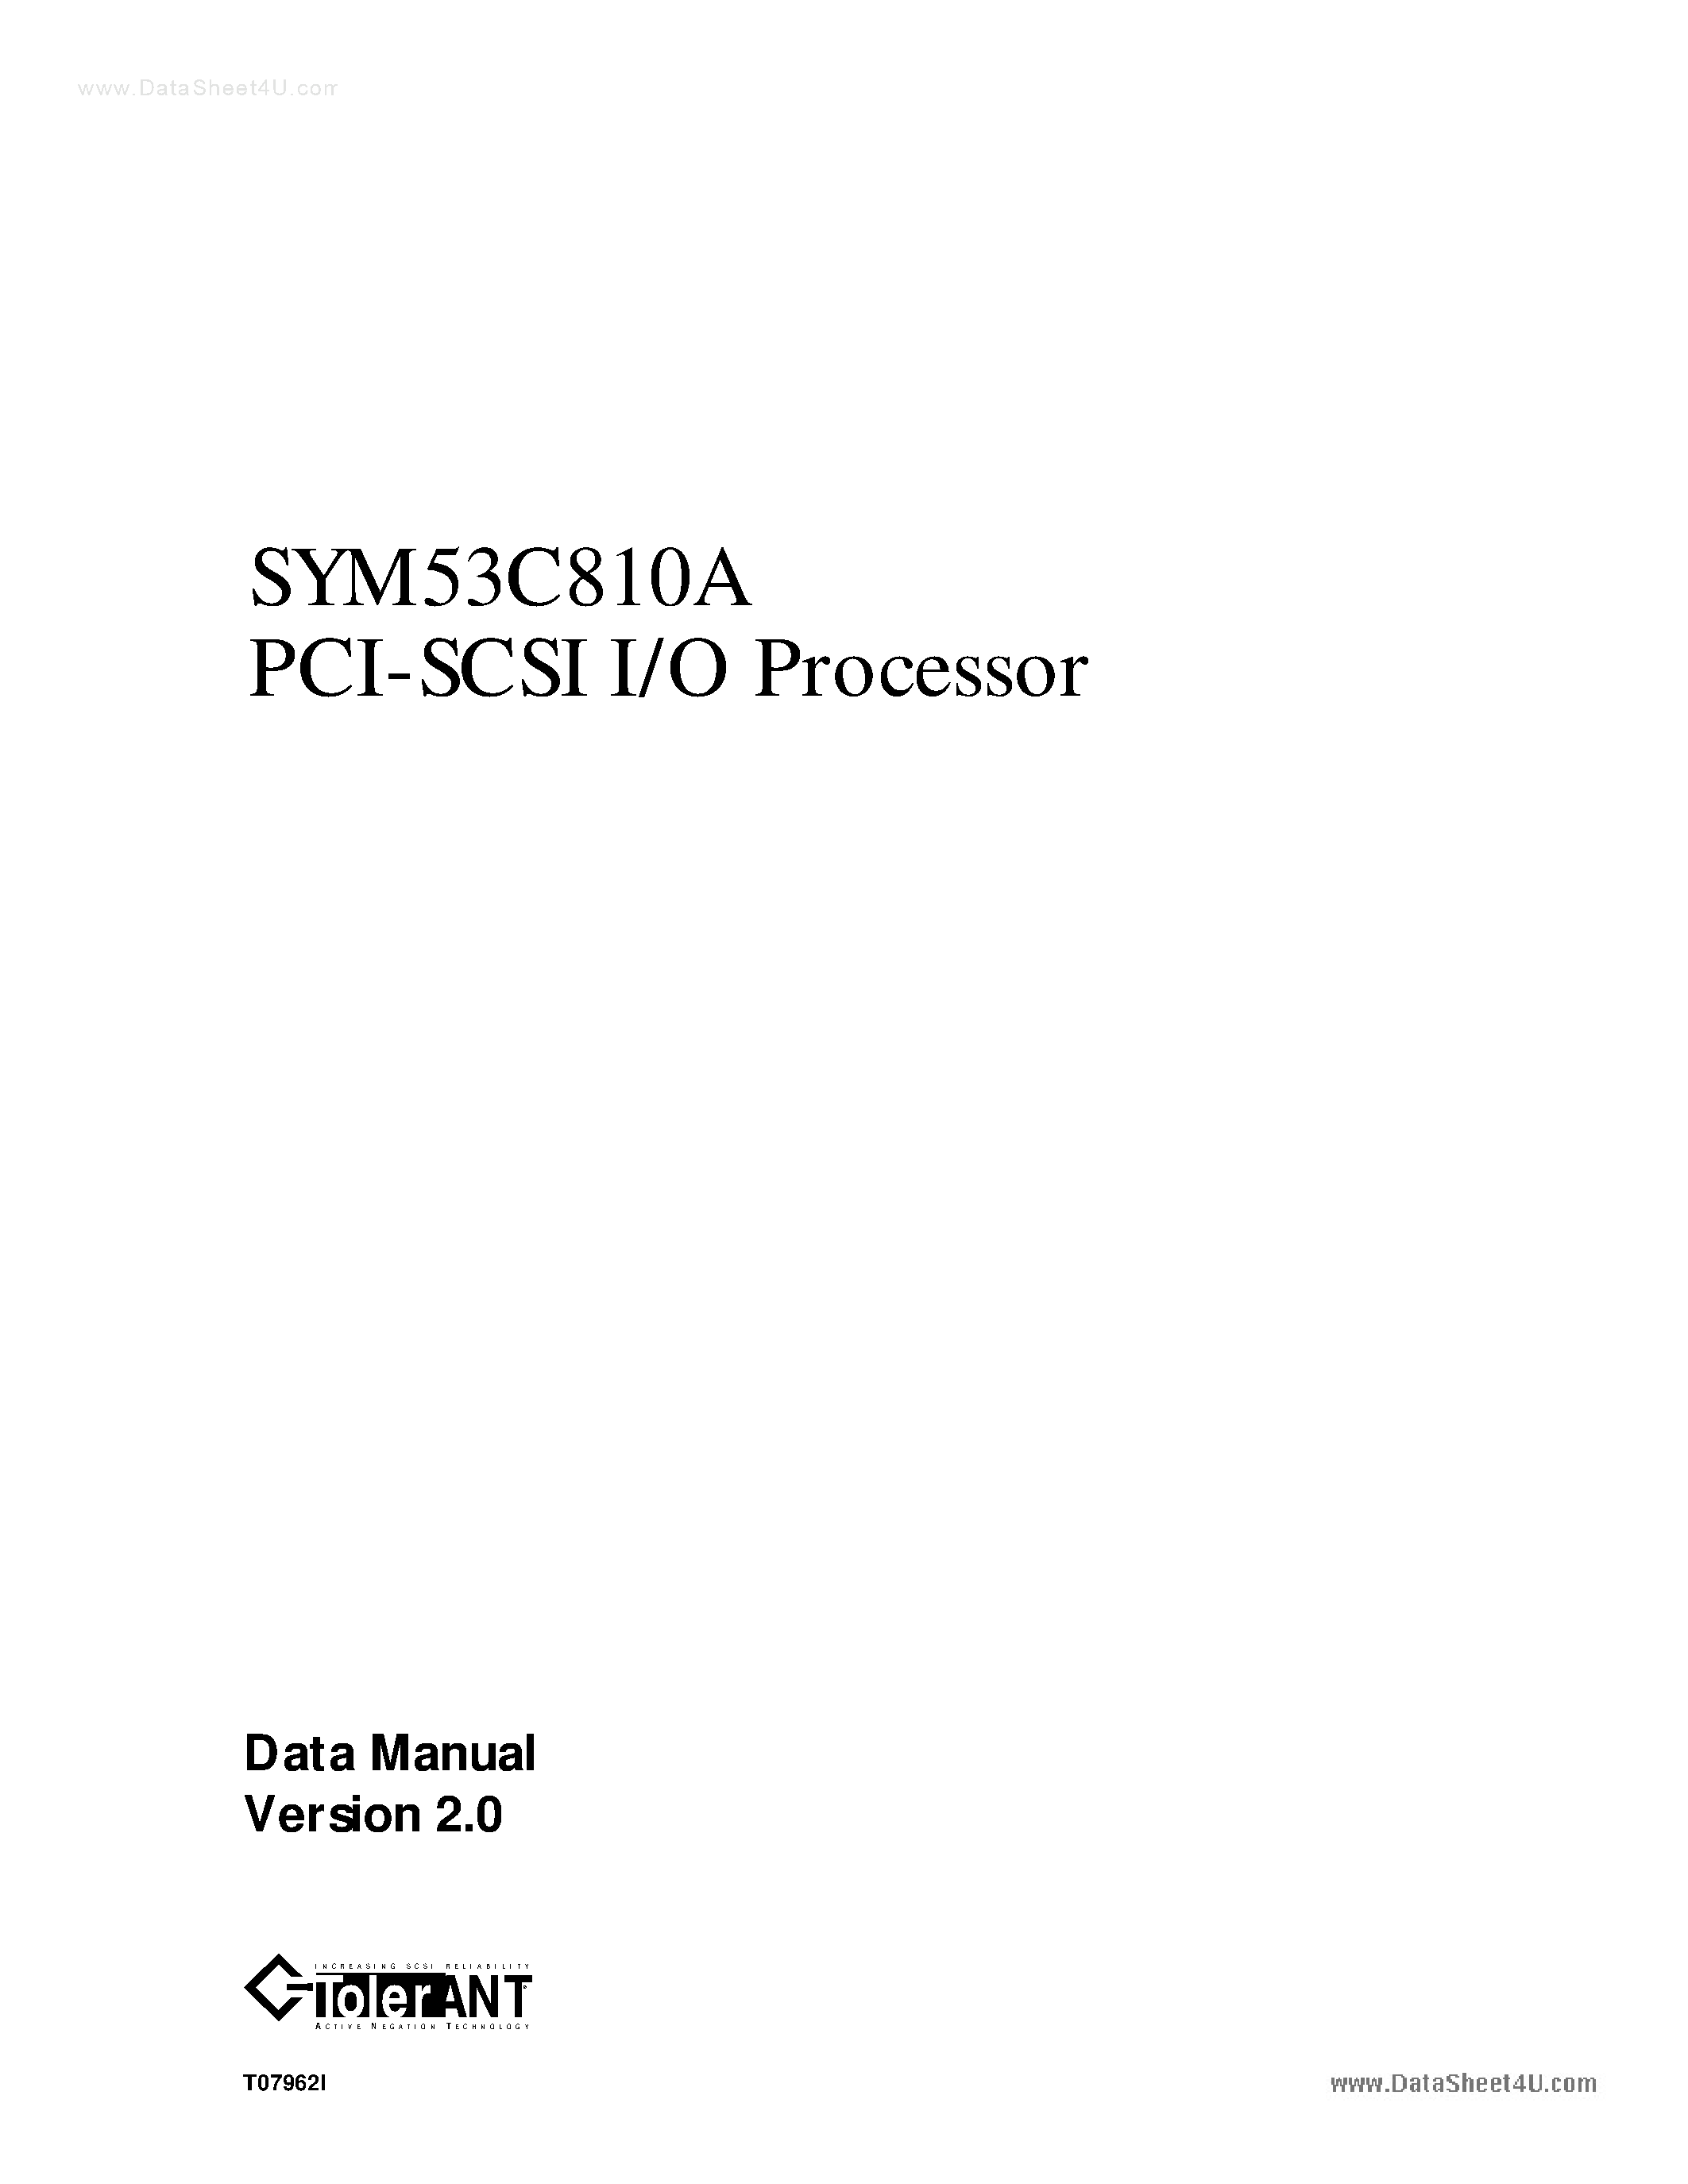 Даташит SYM53C810A - PCI-SCSI I/O Processor страница 1